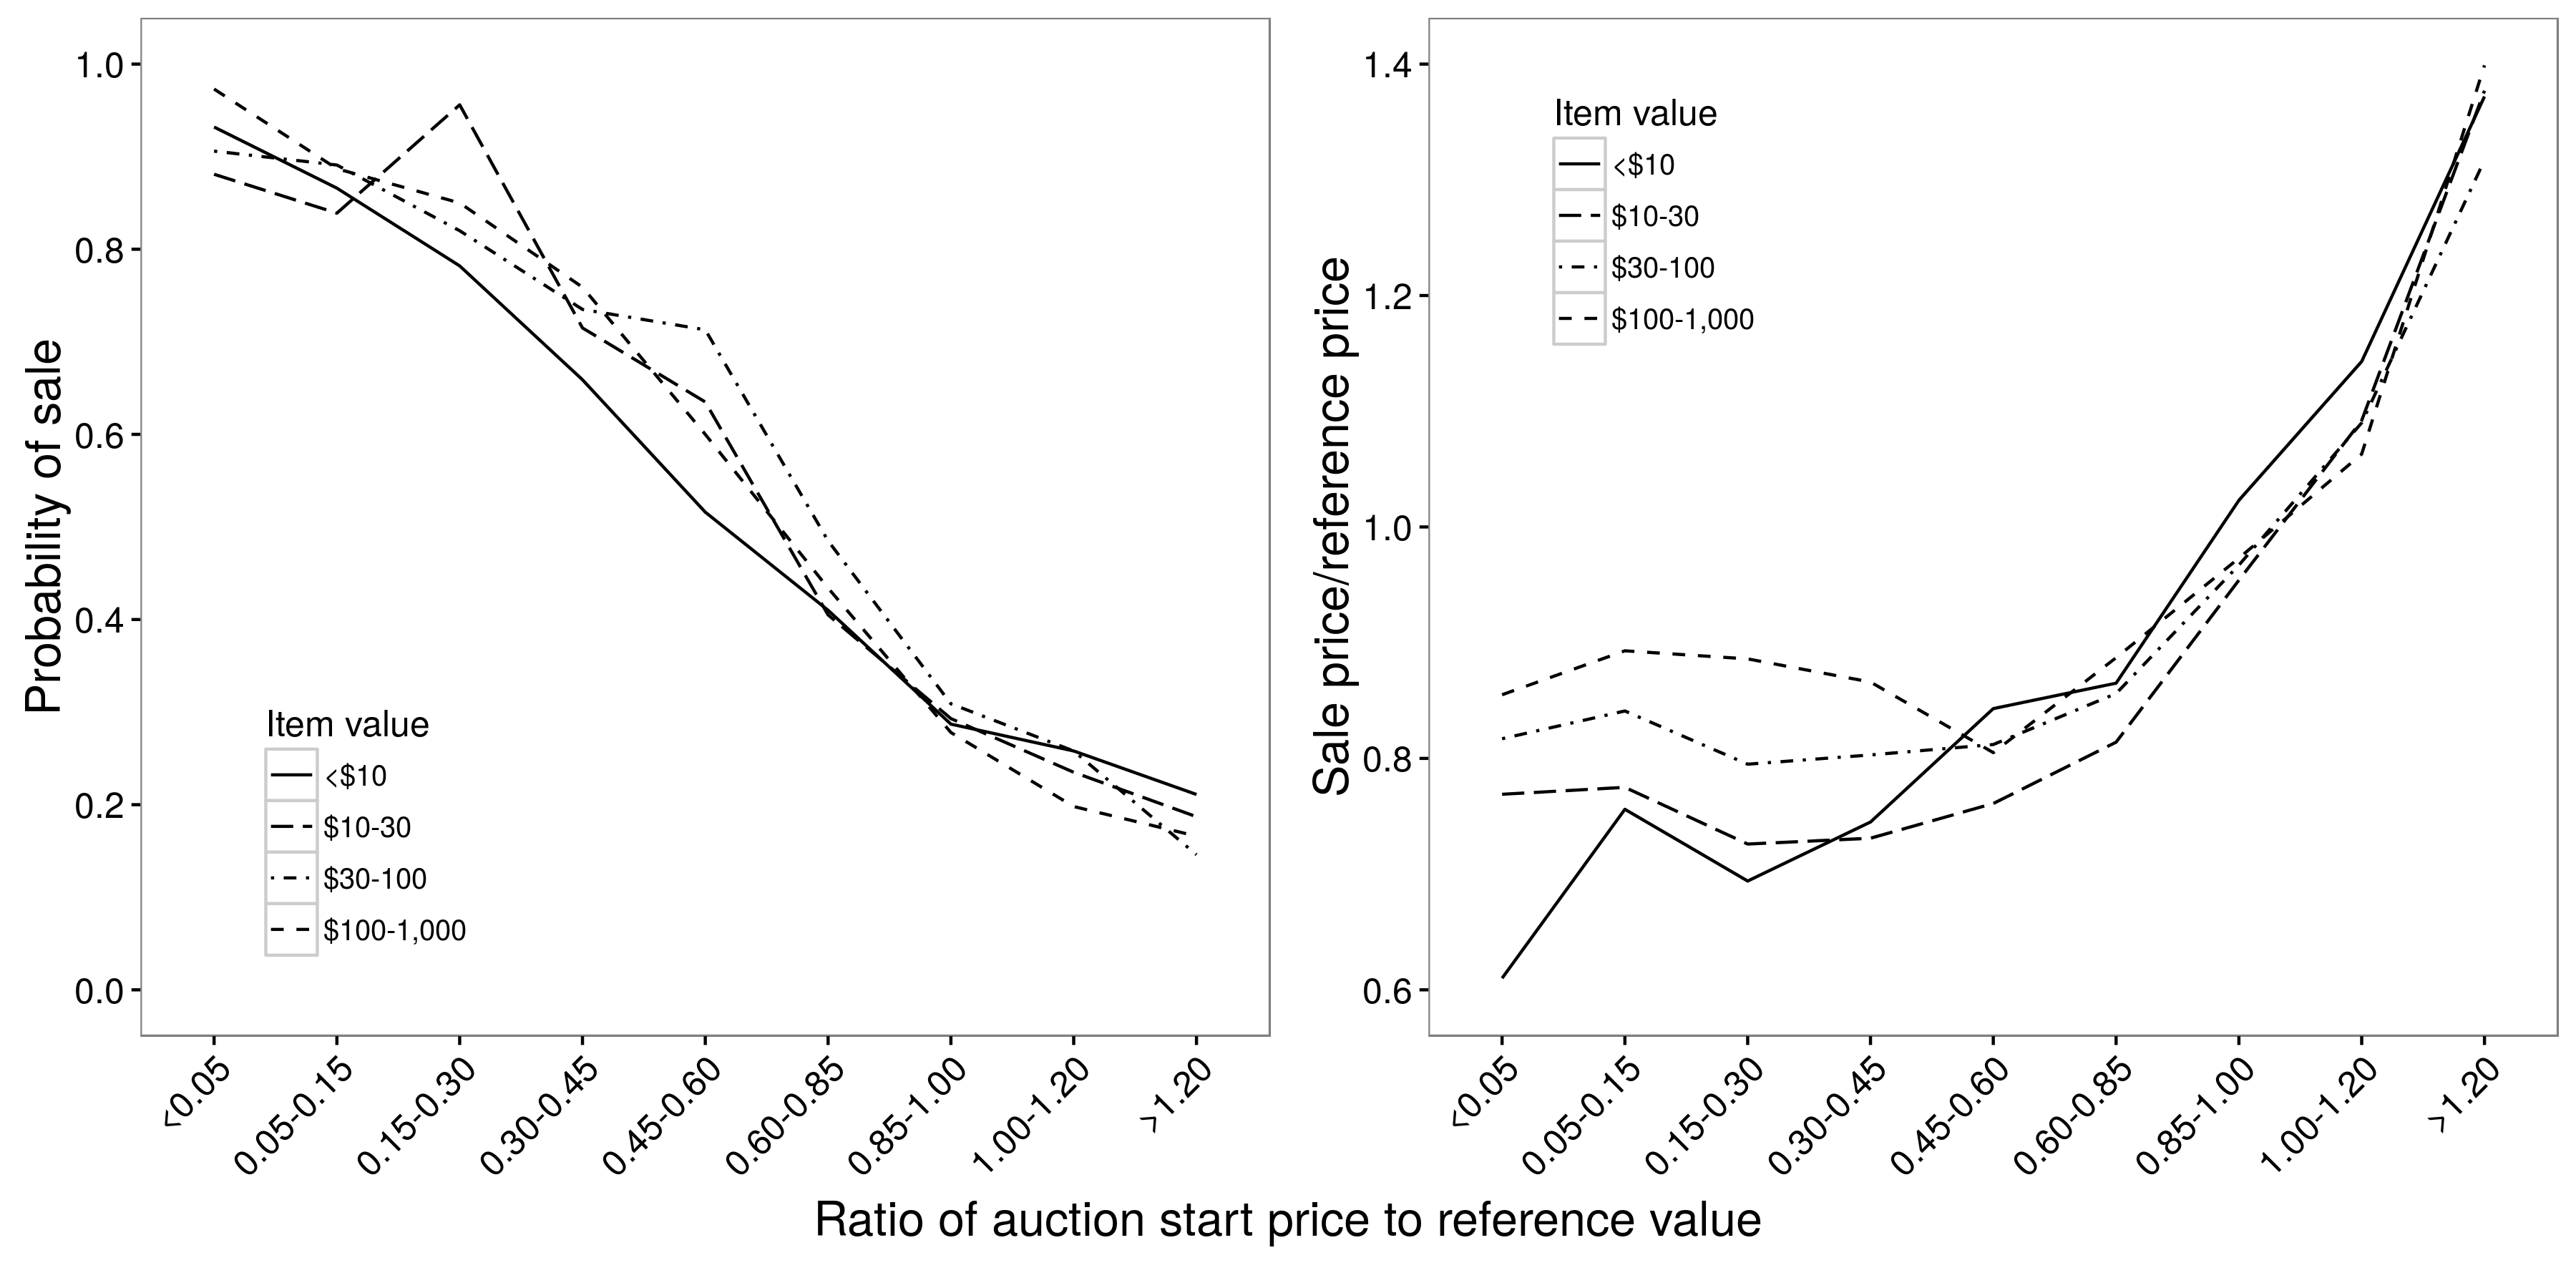 Wykres 2.9: Relacja między ceną wywoławczą aukcji a prawdopodobieństwem sprzedaży (a) i ceną sprzedaży (b). Istnieje w przybliżeniu liniowy związek między ceną początkową a prawdopodobieństwem sprzedaży, ale nieliniowy związek między ceną początkową a ceną sprzedaży; w przypadku cen początkowych od 0,05 do 0,85 cena wywoławcza ma niewielki wpływ na cenę sprzedaży. W obu przypadkach relacje są zasadniczo niezależne od wartości towaru. Adaptacja z Einav et al. (2015), rysunki 4a i 4b.